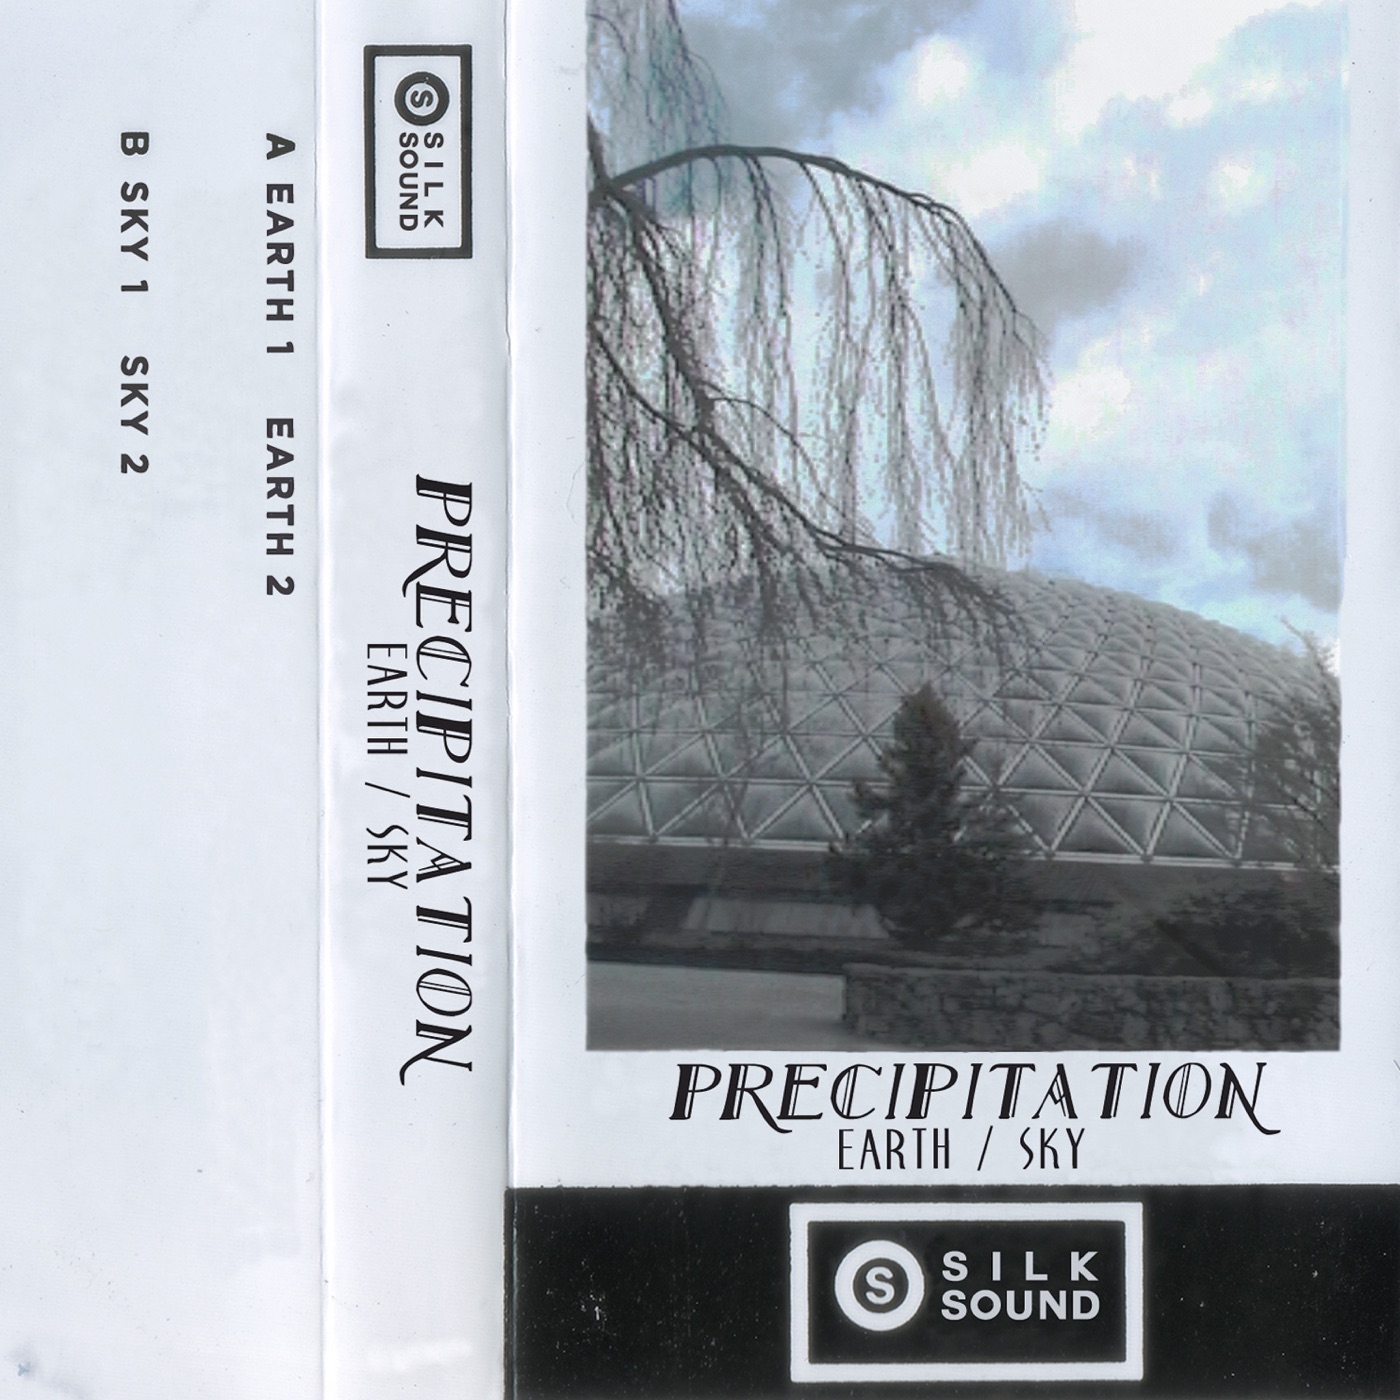 Earth / Sky by Precipitation